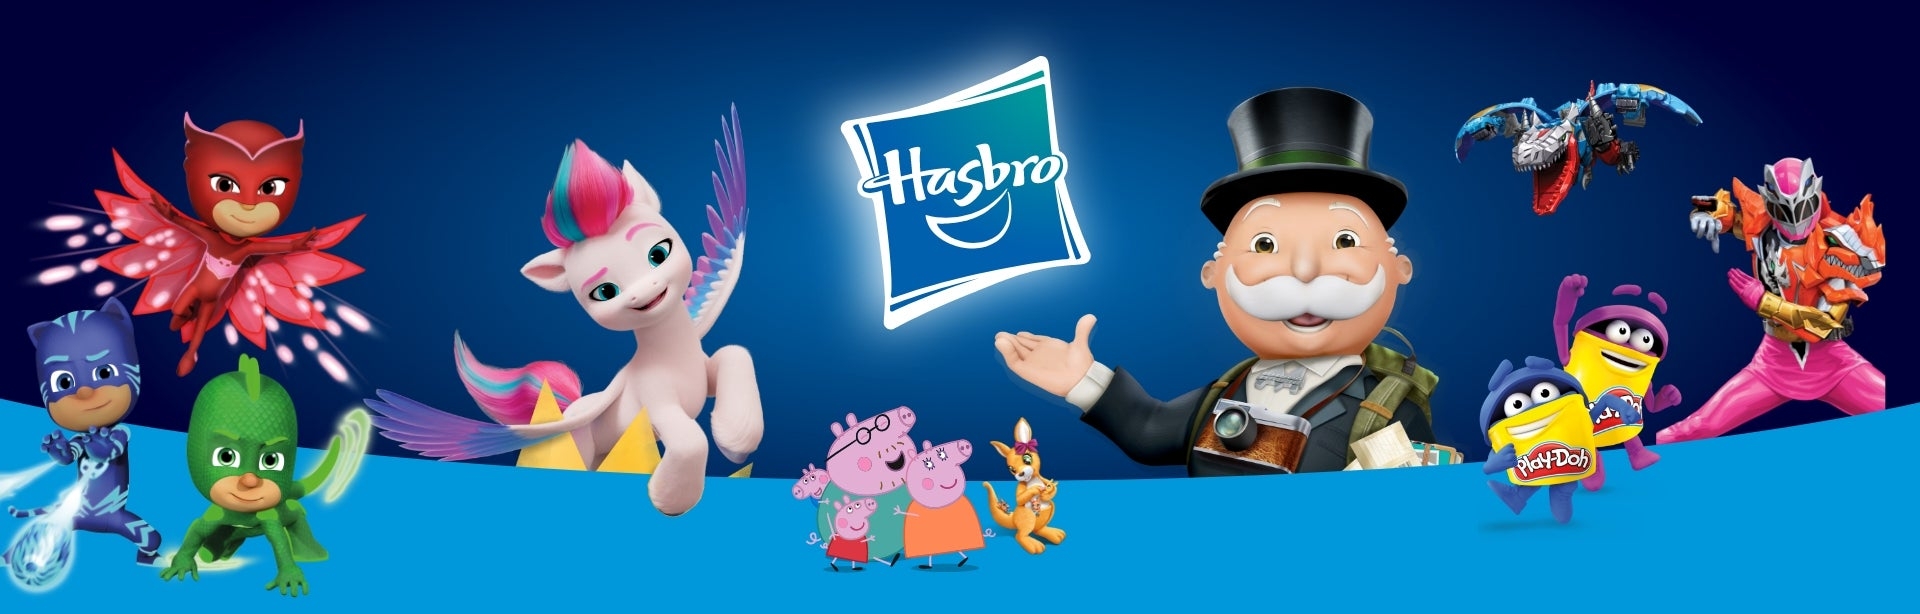 Juegos y personajes de Hasbro Play